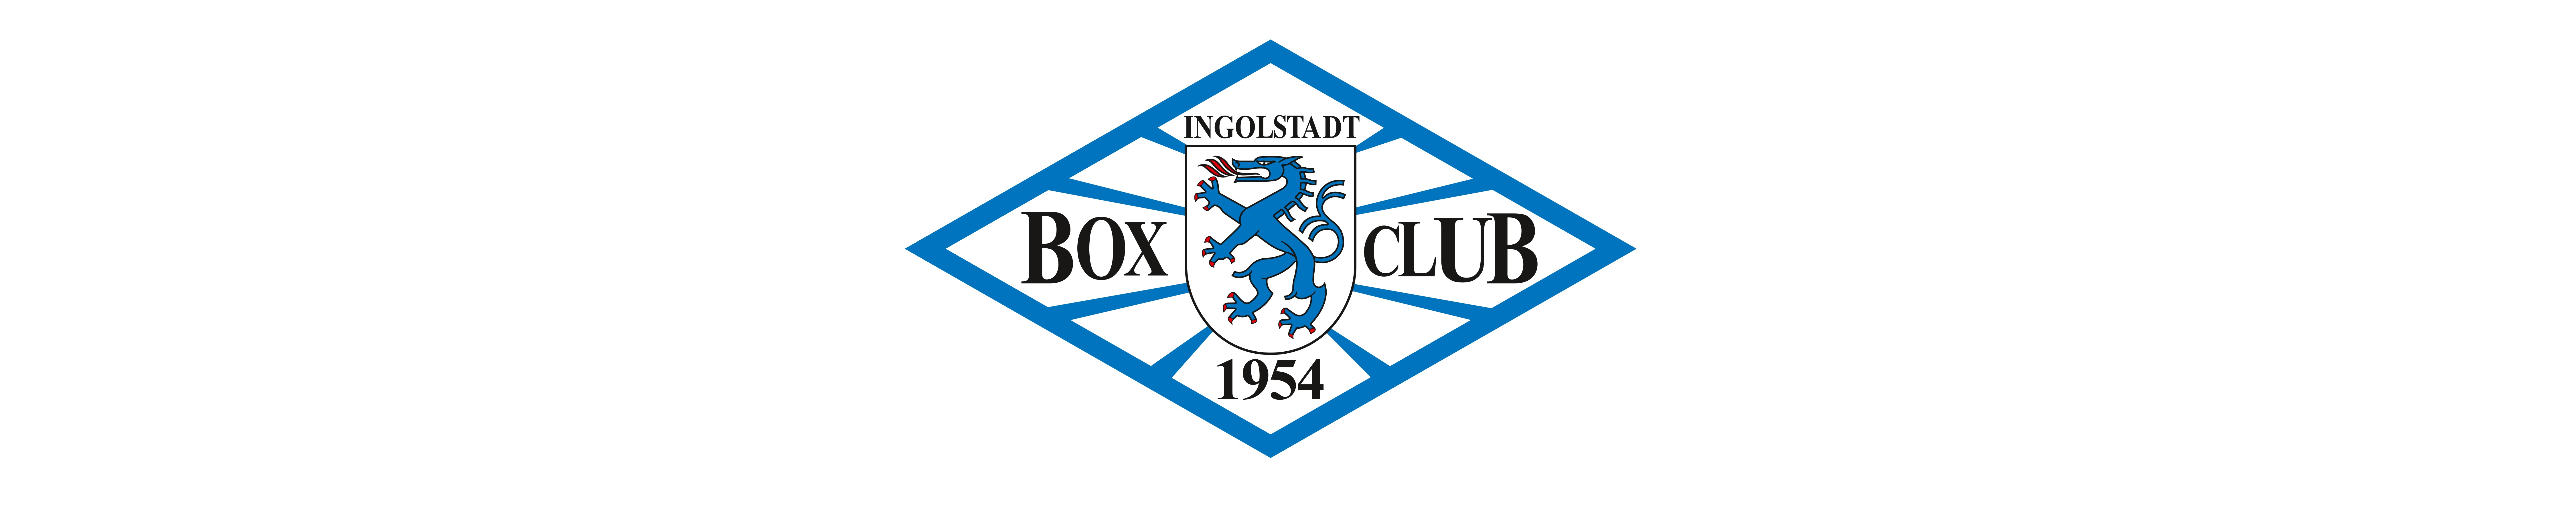 Box-Club Ingolstadt 1954 e.V.